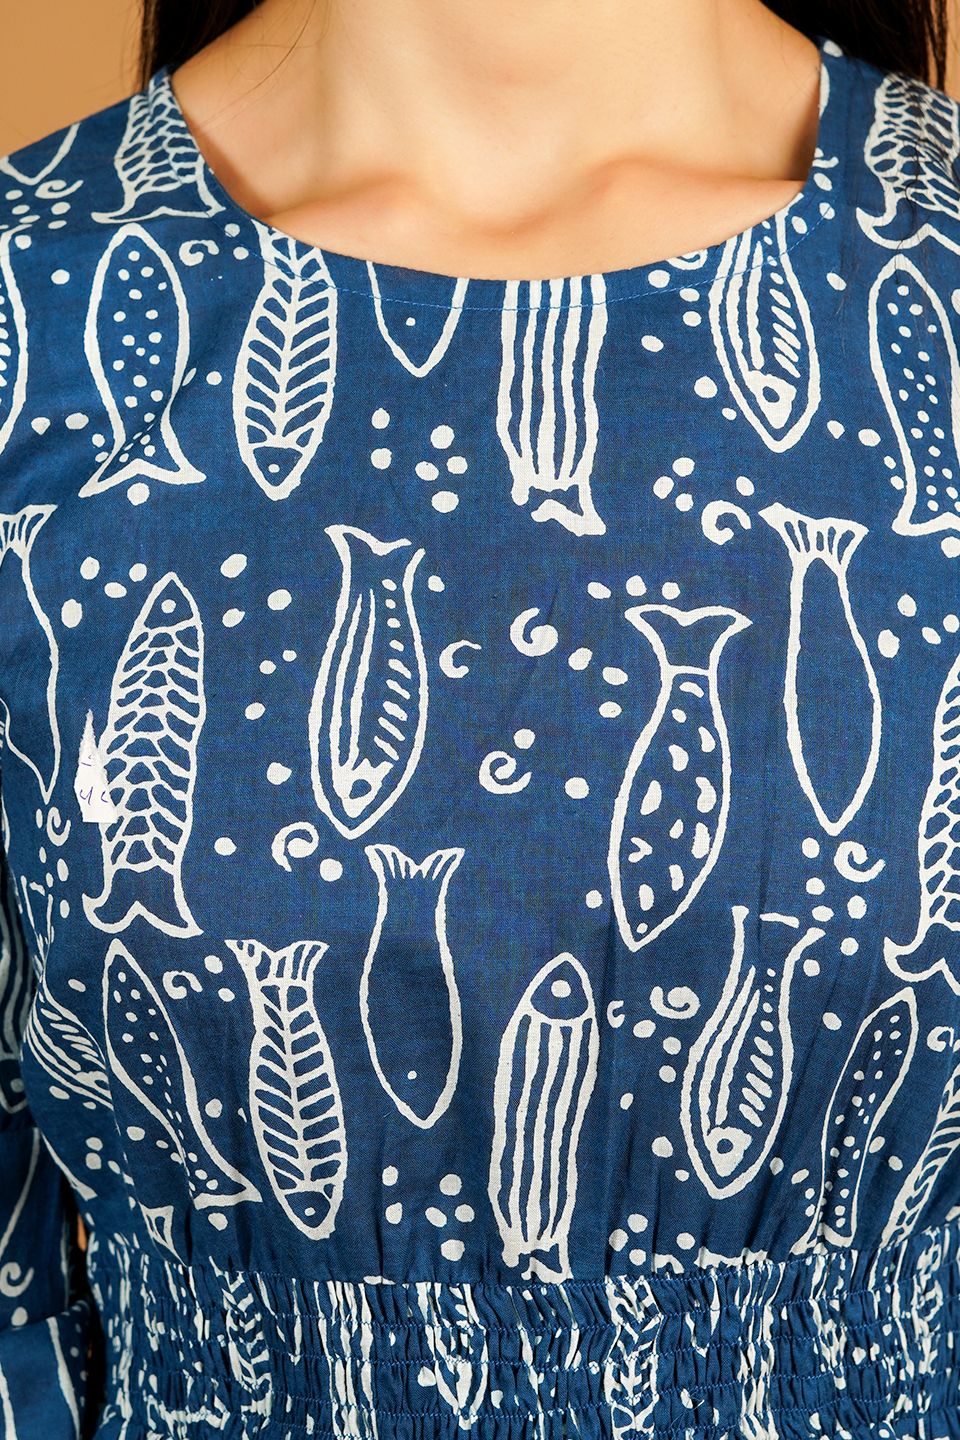 Screen Print Blue Midi Dress